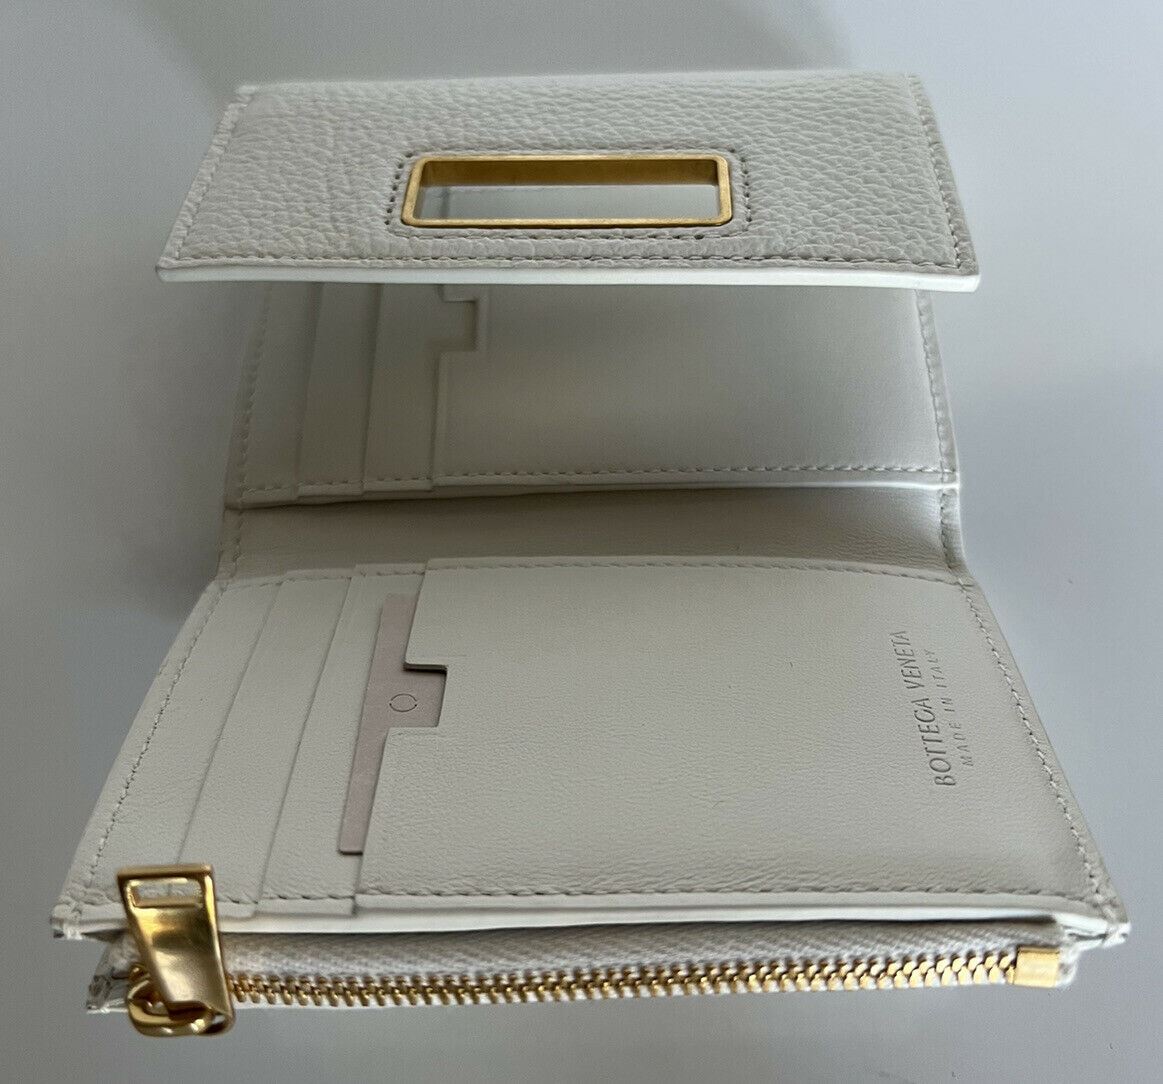 NWT $600 Bottega Veneta Women's White Wallet 629554 Made in Italy